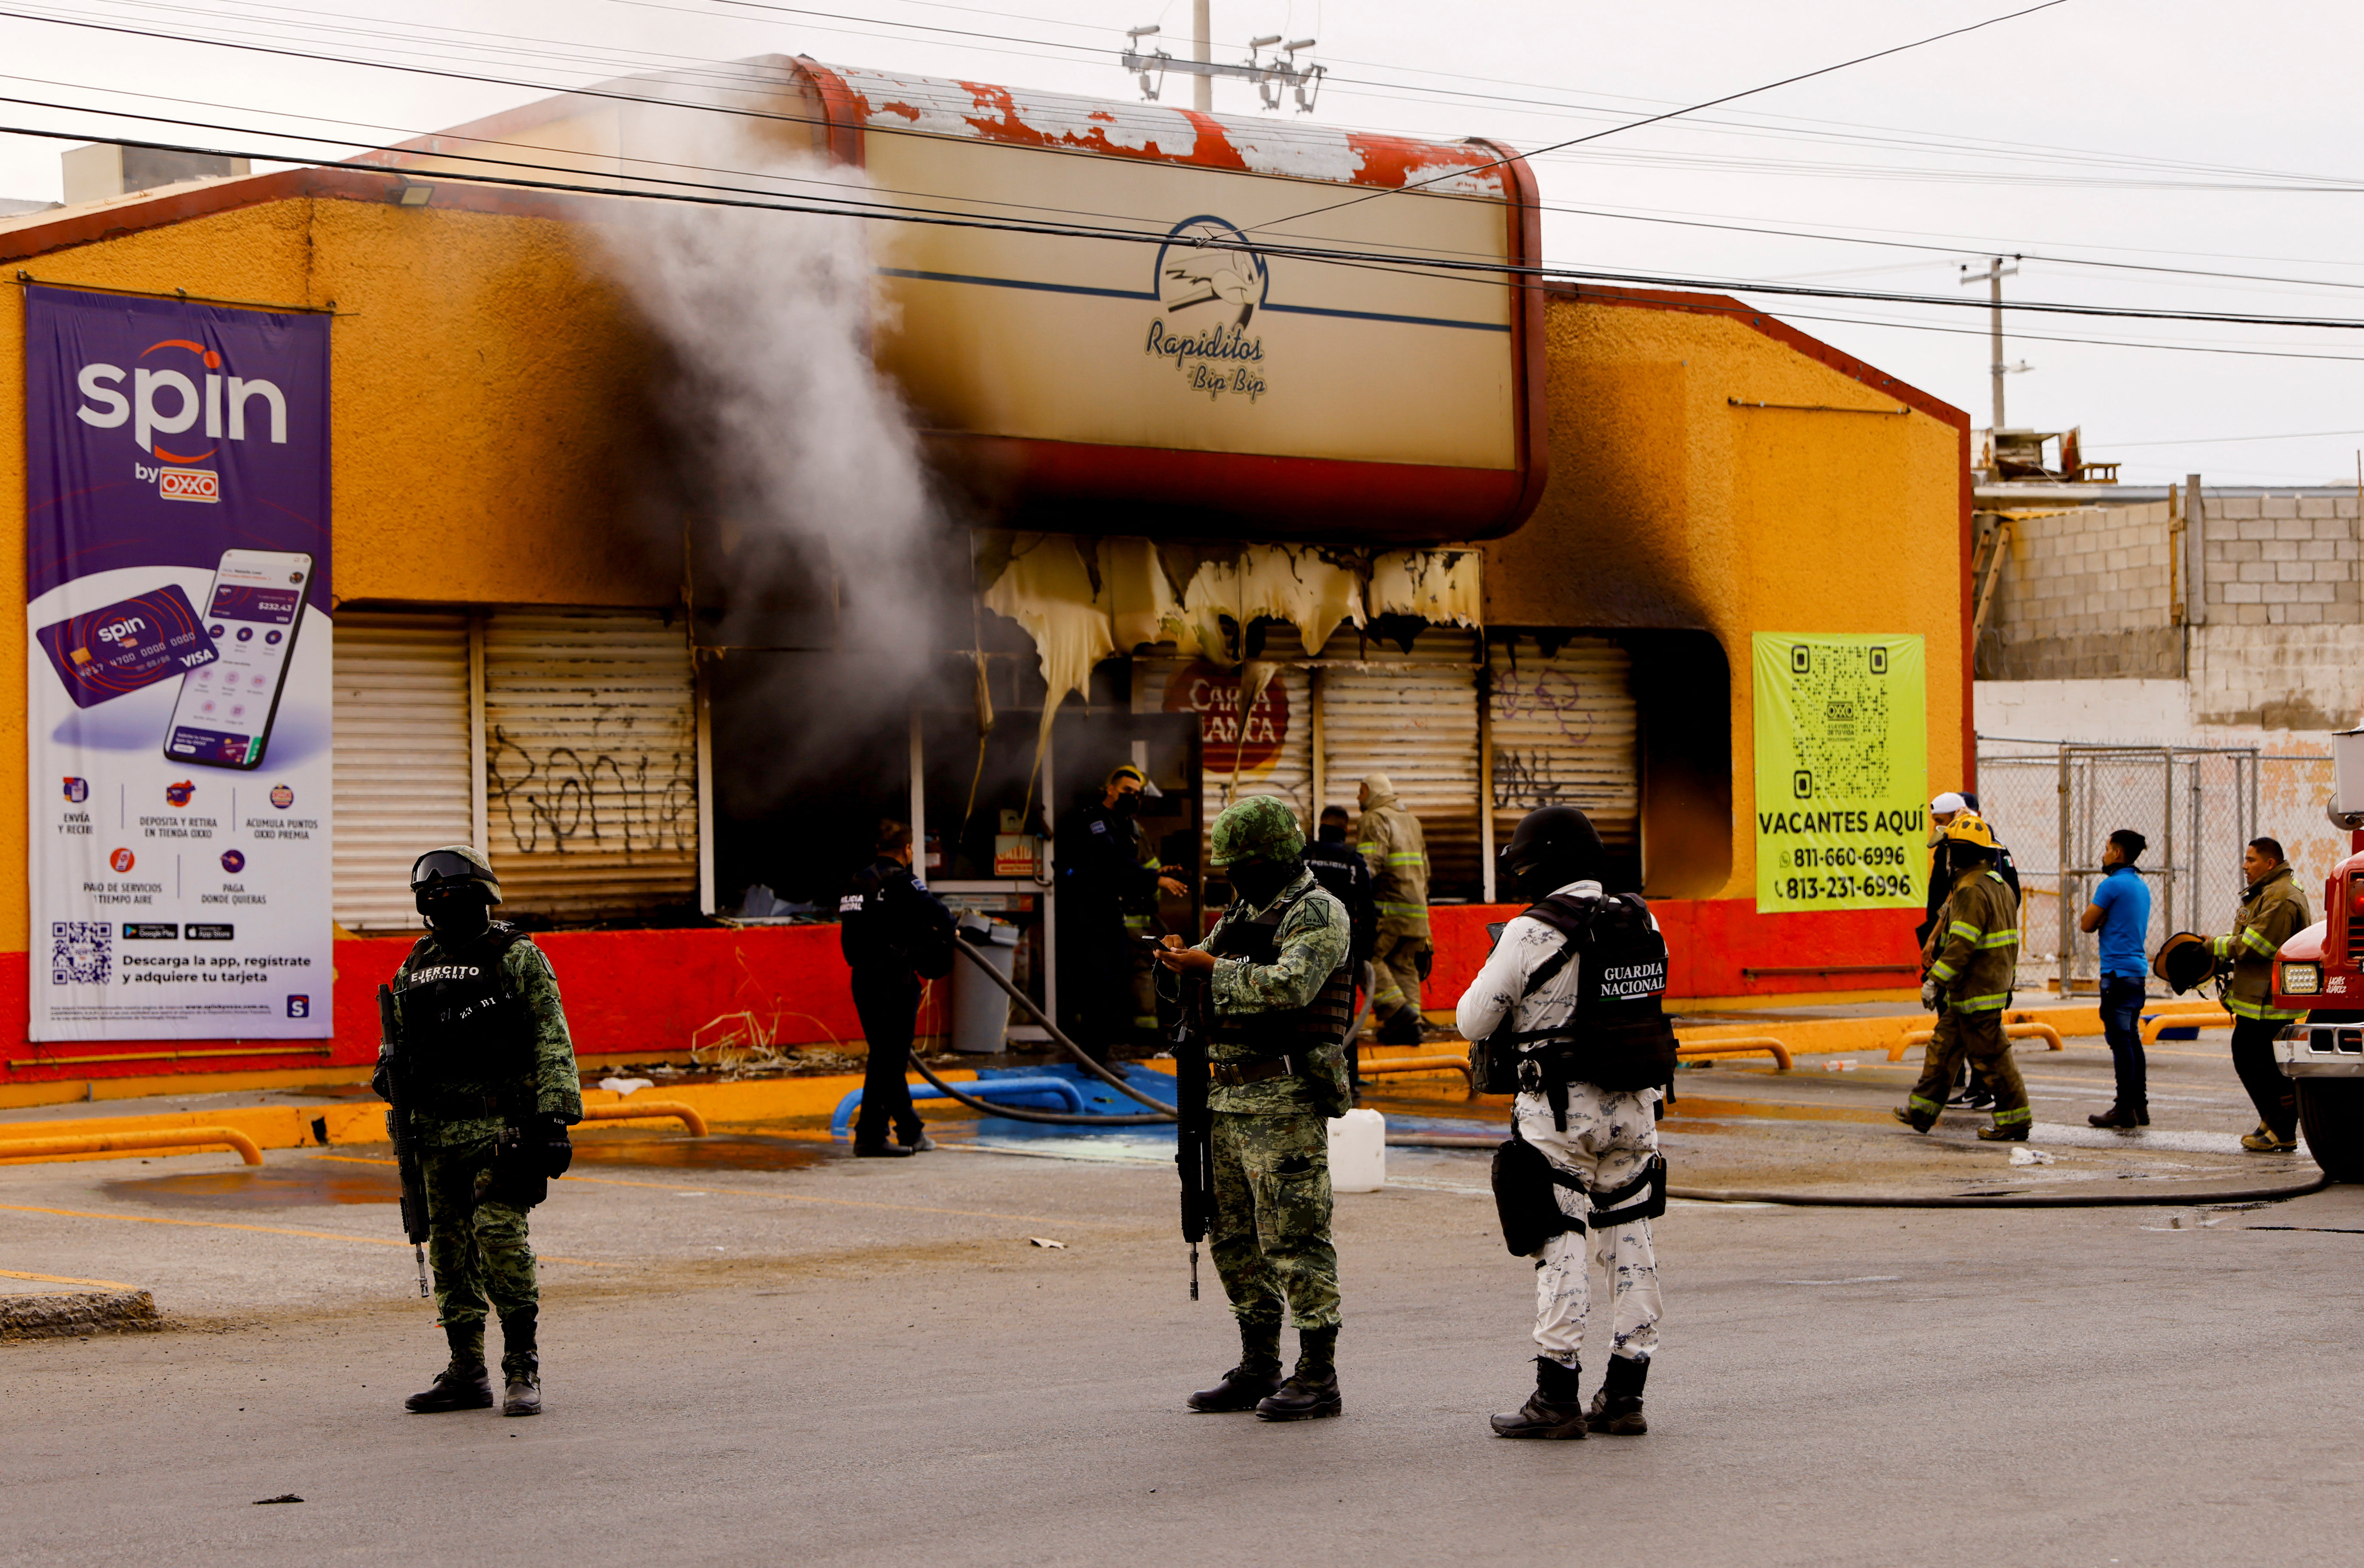 Dos mujeres murieron intoxicadas en una tienda de conveniencia (Foto: REUTERS/José Luis González)